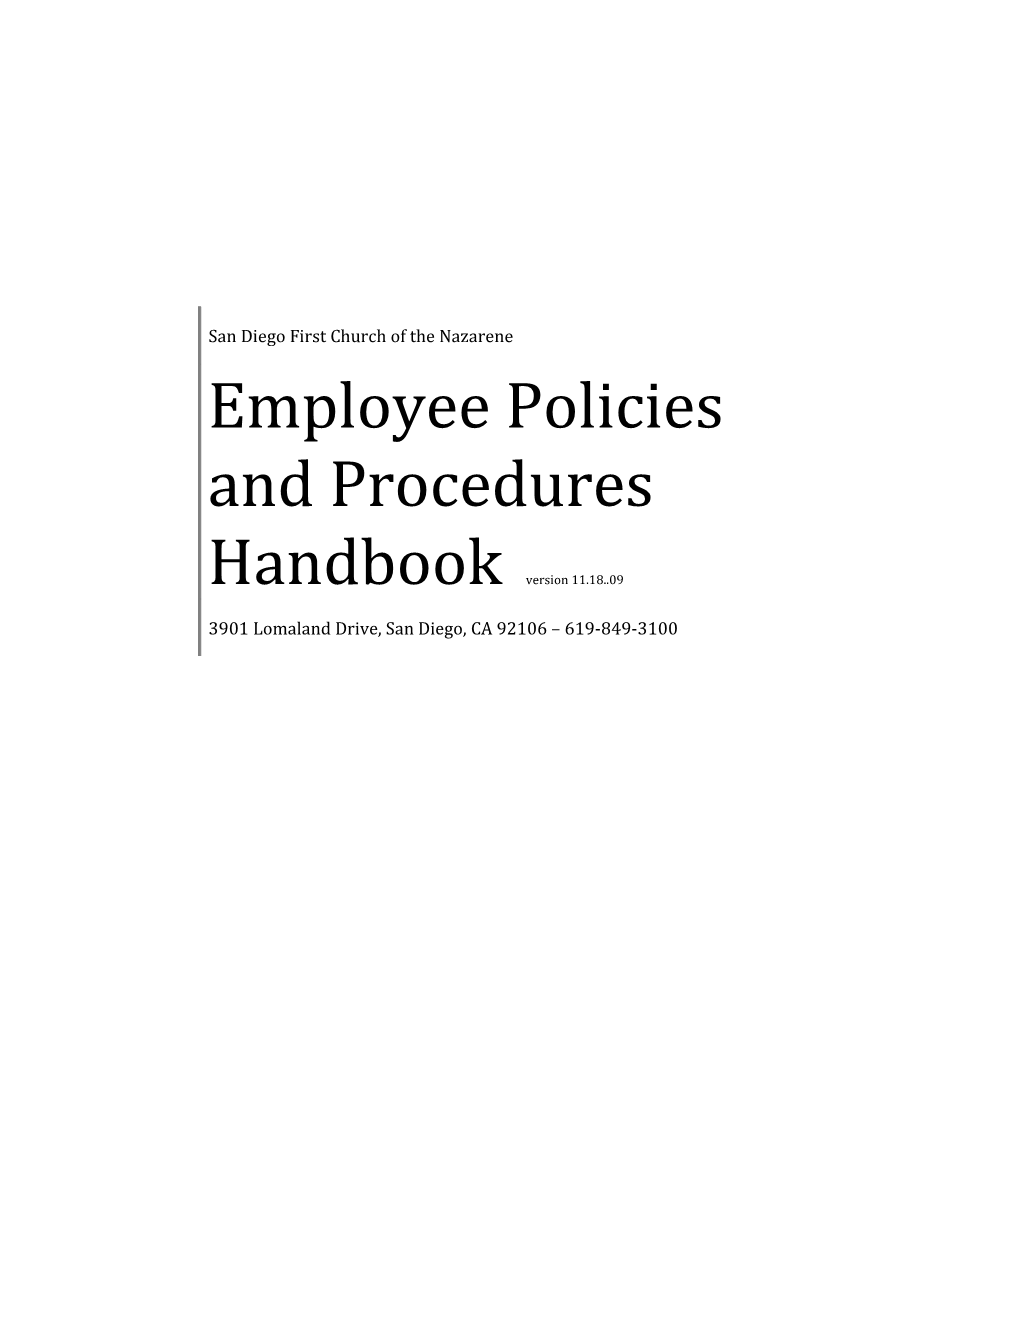 Employee Policies and Procedures Handbook